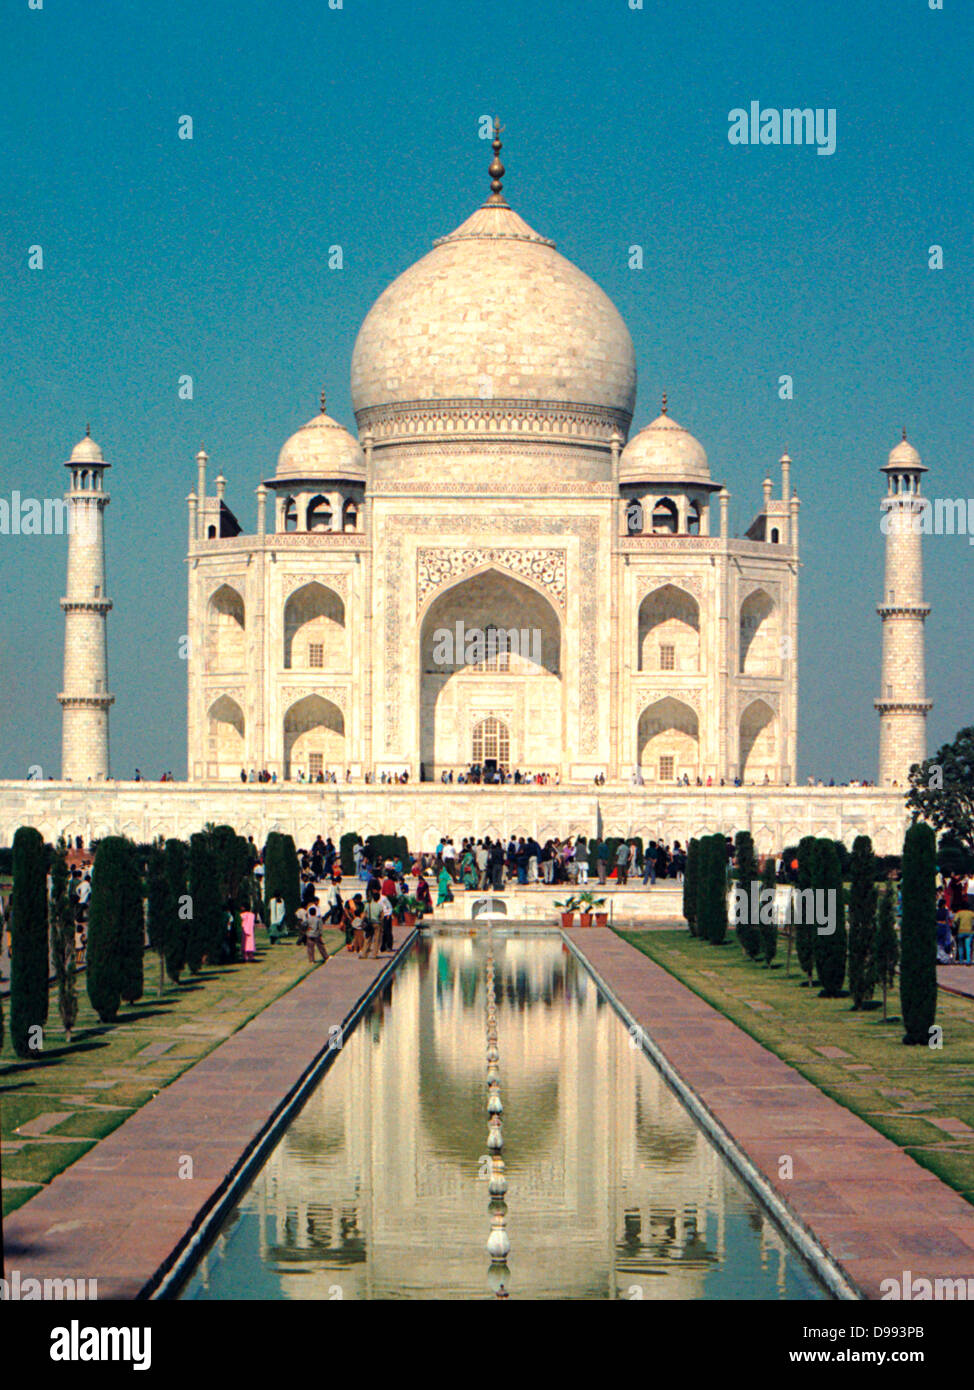 Le Taj Mahal est un mausolée situé à Agra, en Inde, construit par l'empereur Moghol Shah Jahan en mémoire de son épouse favorite, Mumtaz Mahal. C'est un bel exemple de l'architecture de Mughal. Bâtiment a été achevée vers 1653. Ahmad Lahauri est considéré comme le pr Banque D'Images